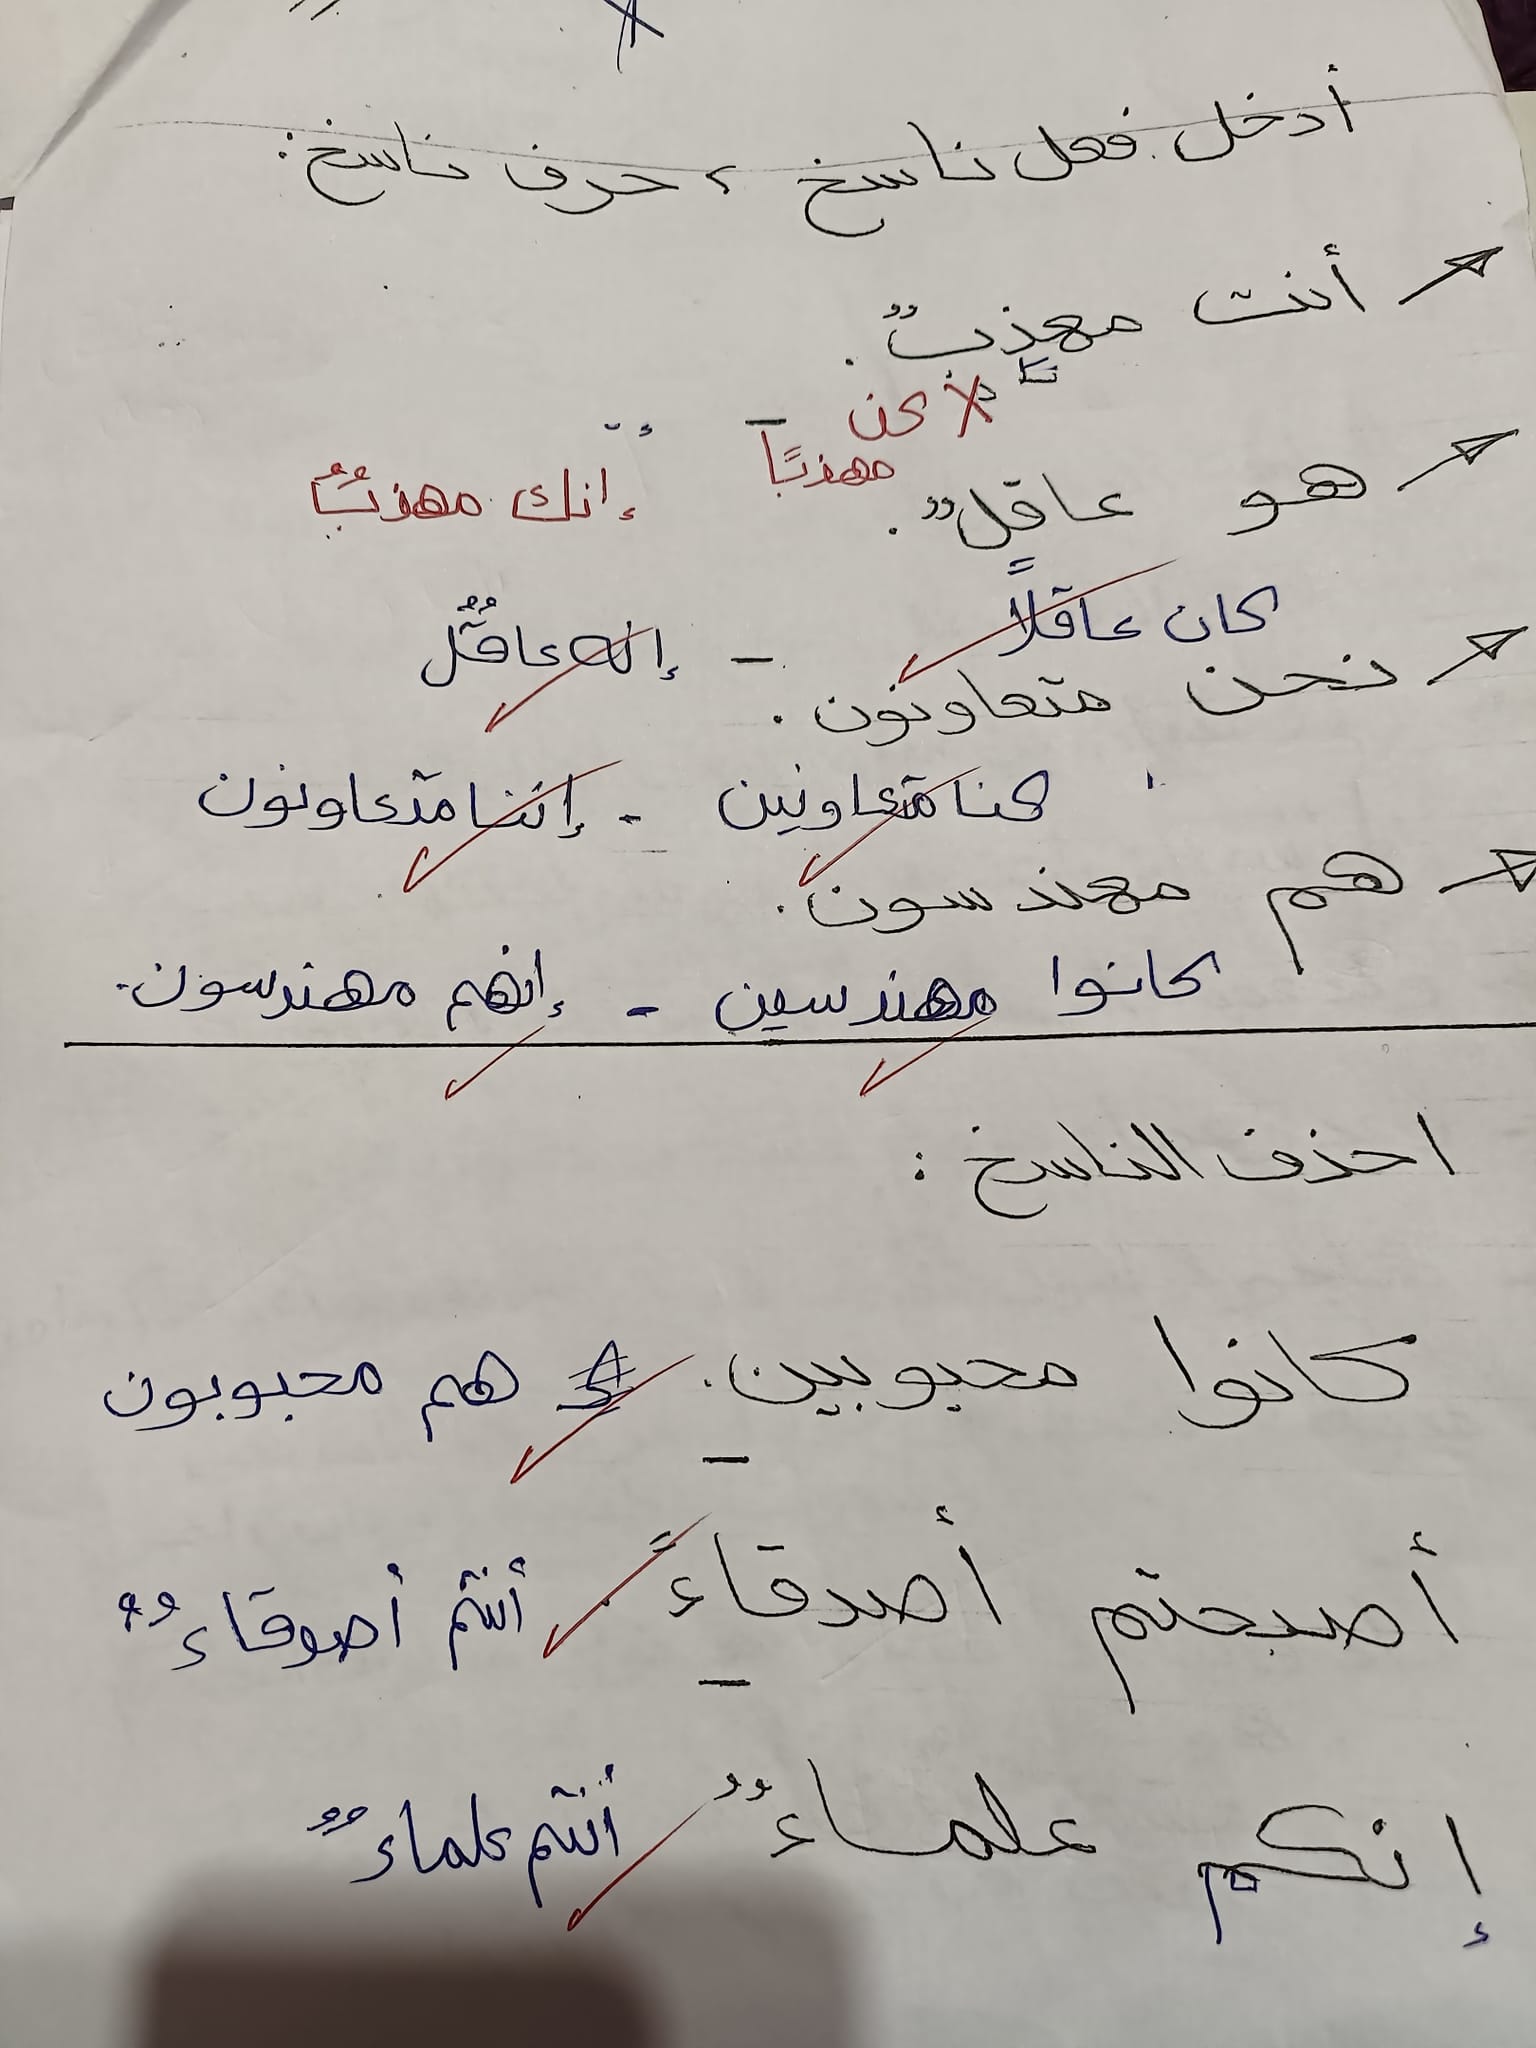 مدرس دوت كوم مراجعة نحو بالاجابات فى اللغة العربية للصف الأول الإعدادي الترم الأول أ/ مها سعيد	